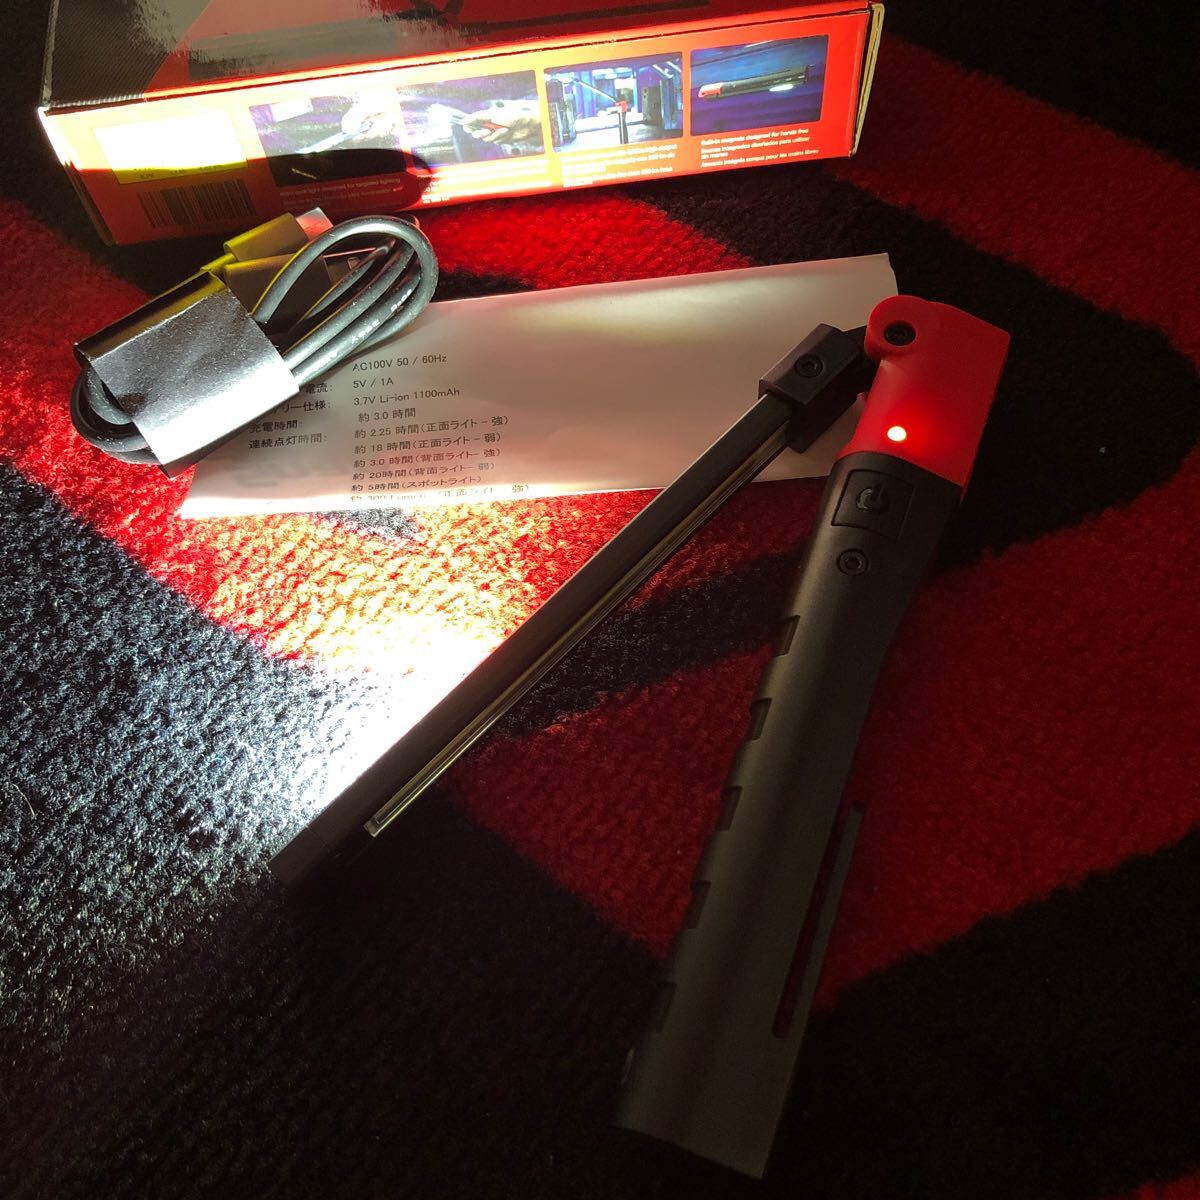  Snap-on LED рабочее освещение ECPND032J фонарик-ручка Snap-on рабочее освещение авторучка type складной 3WAY новый товар красный 